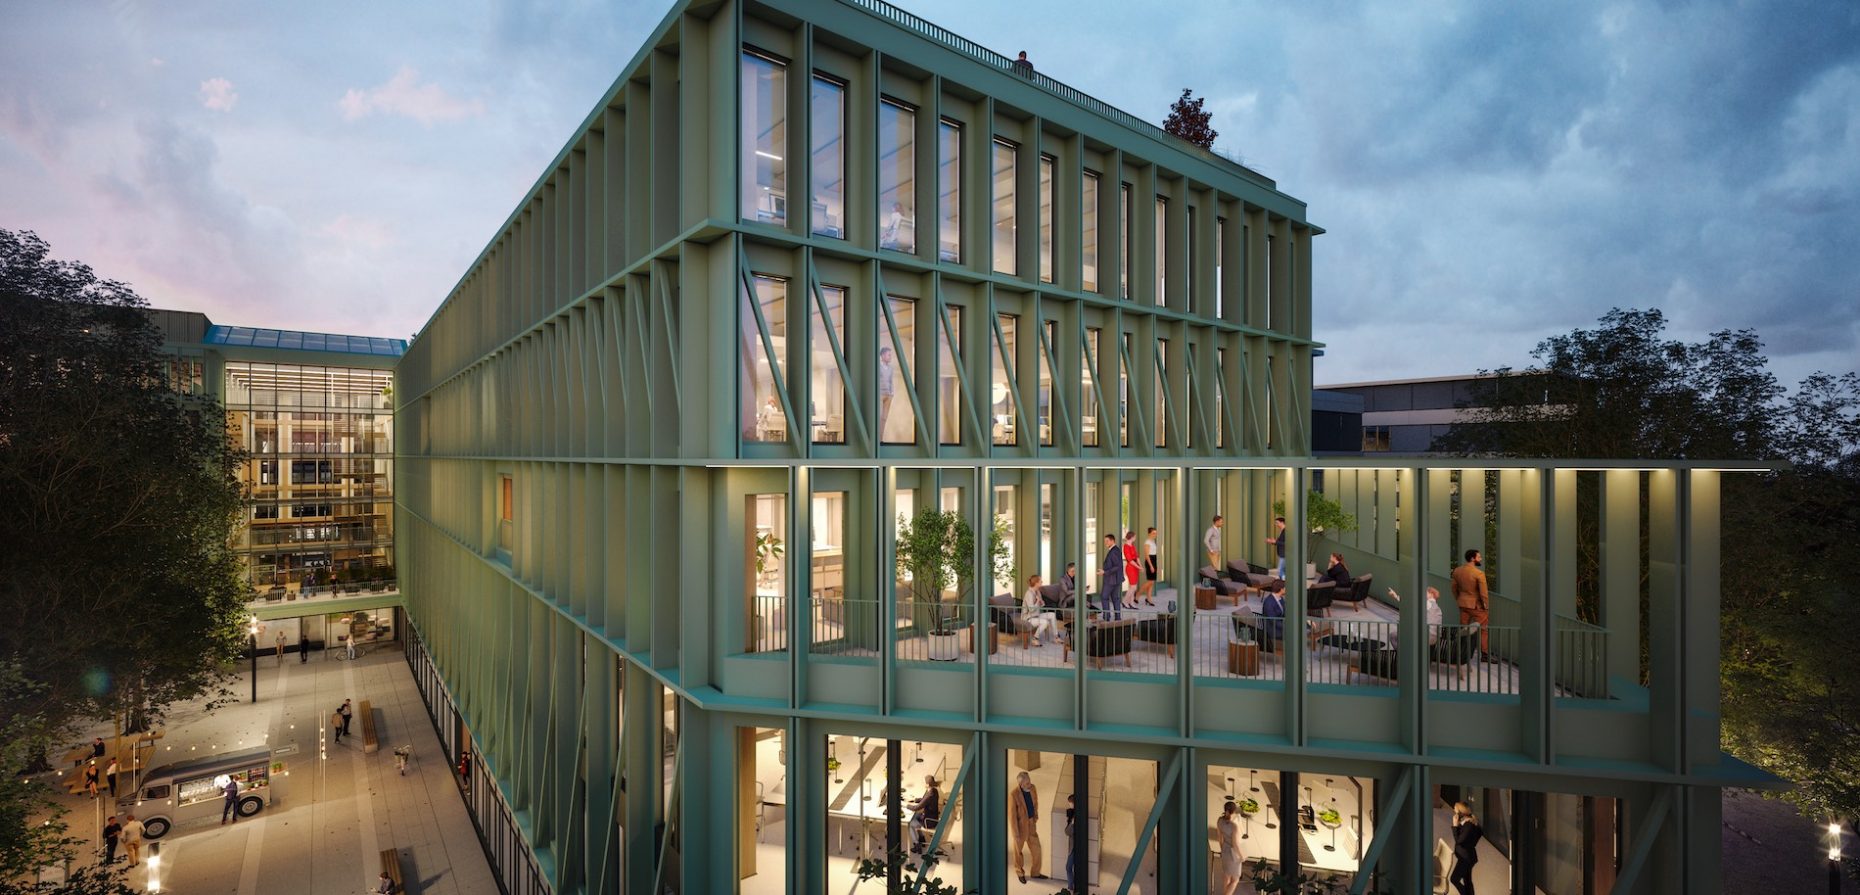 Green Building im doppelten Sinn: der Holz-Hybride i8 im Münchener Werksviertel erhält derzeit eine recycelte Fassade mit grünen, auf die Umgebung referenzierenden Elementen. Foto: © R&S Immobilienmanagement GmbH